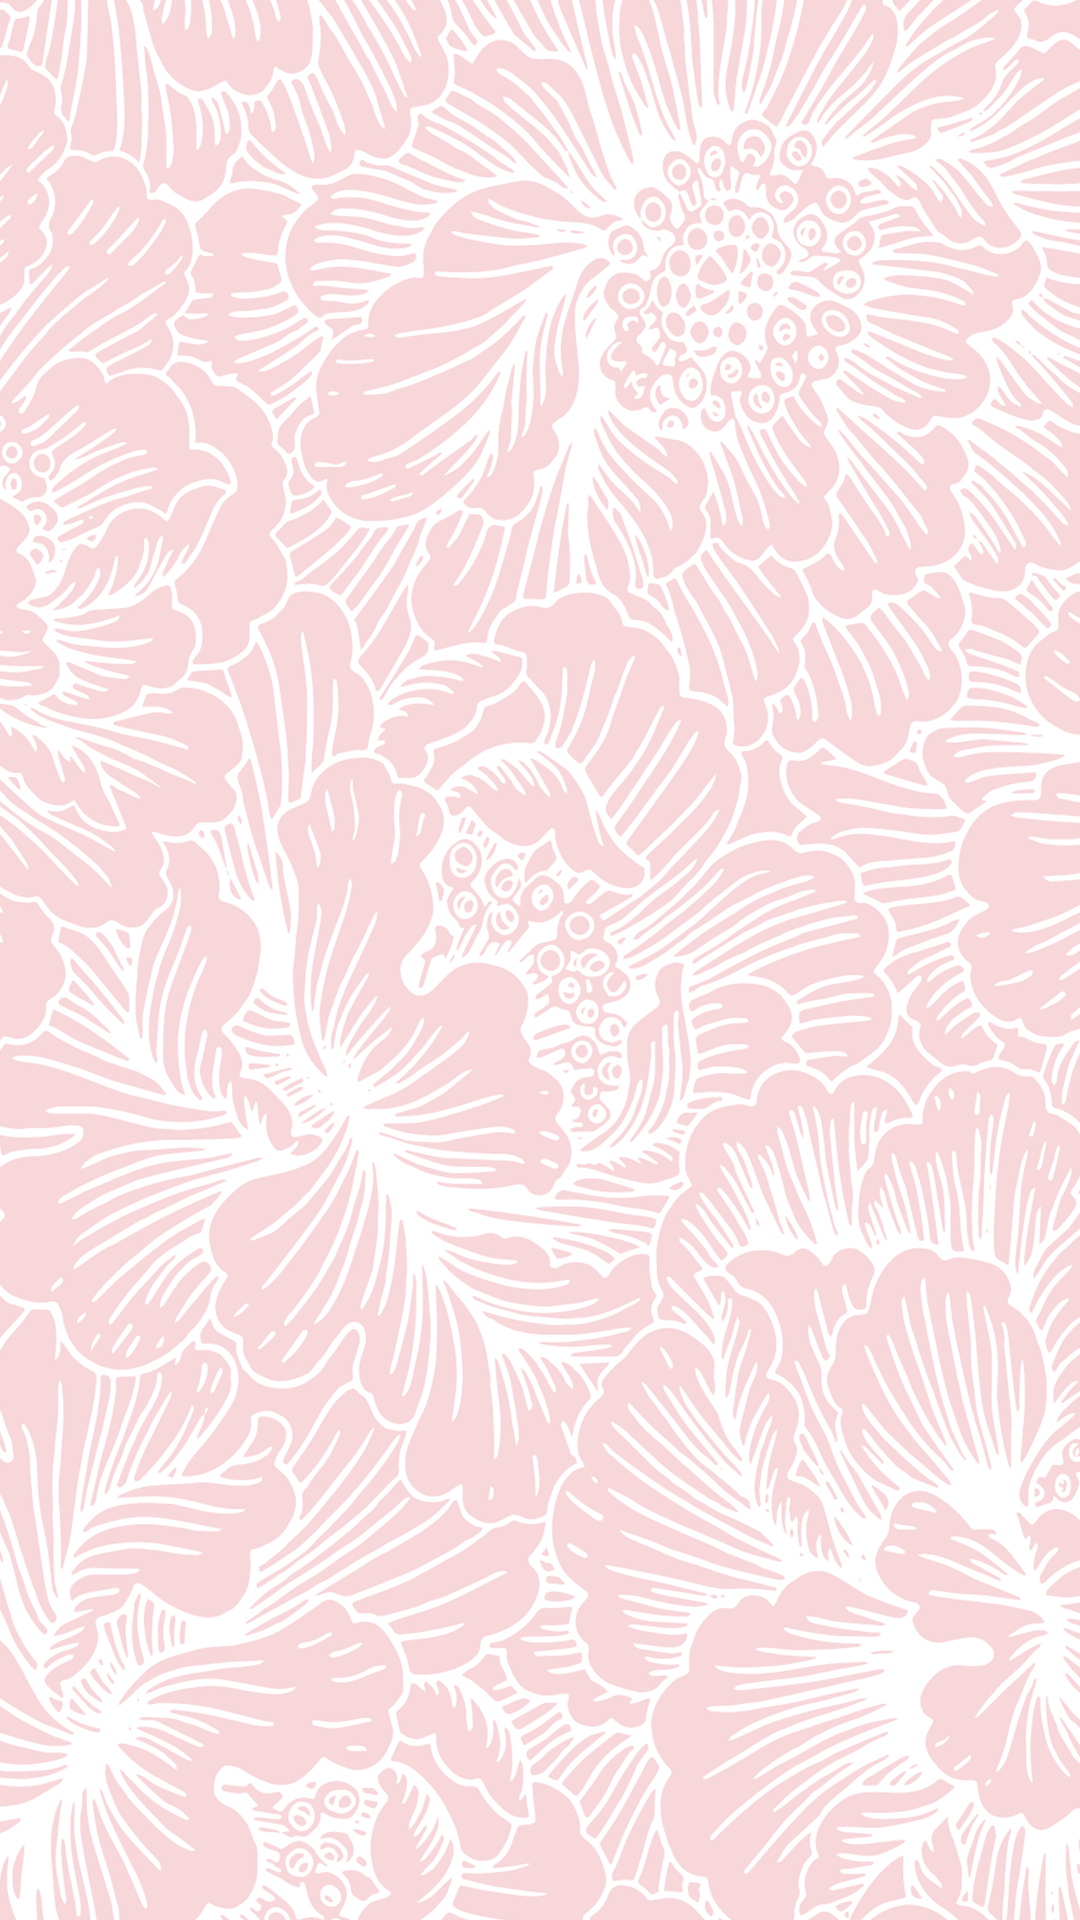 Más de 35 fondos de pantalla florales de color rosa pálido - Descarga